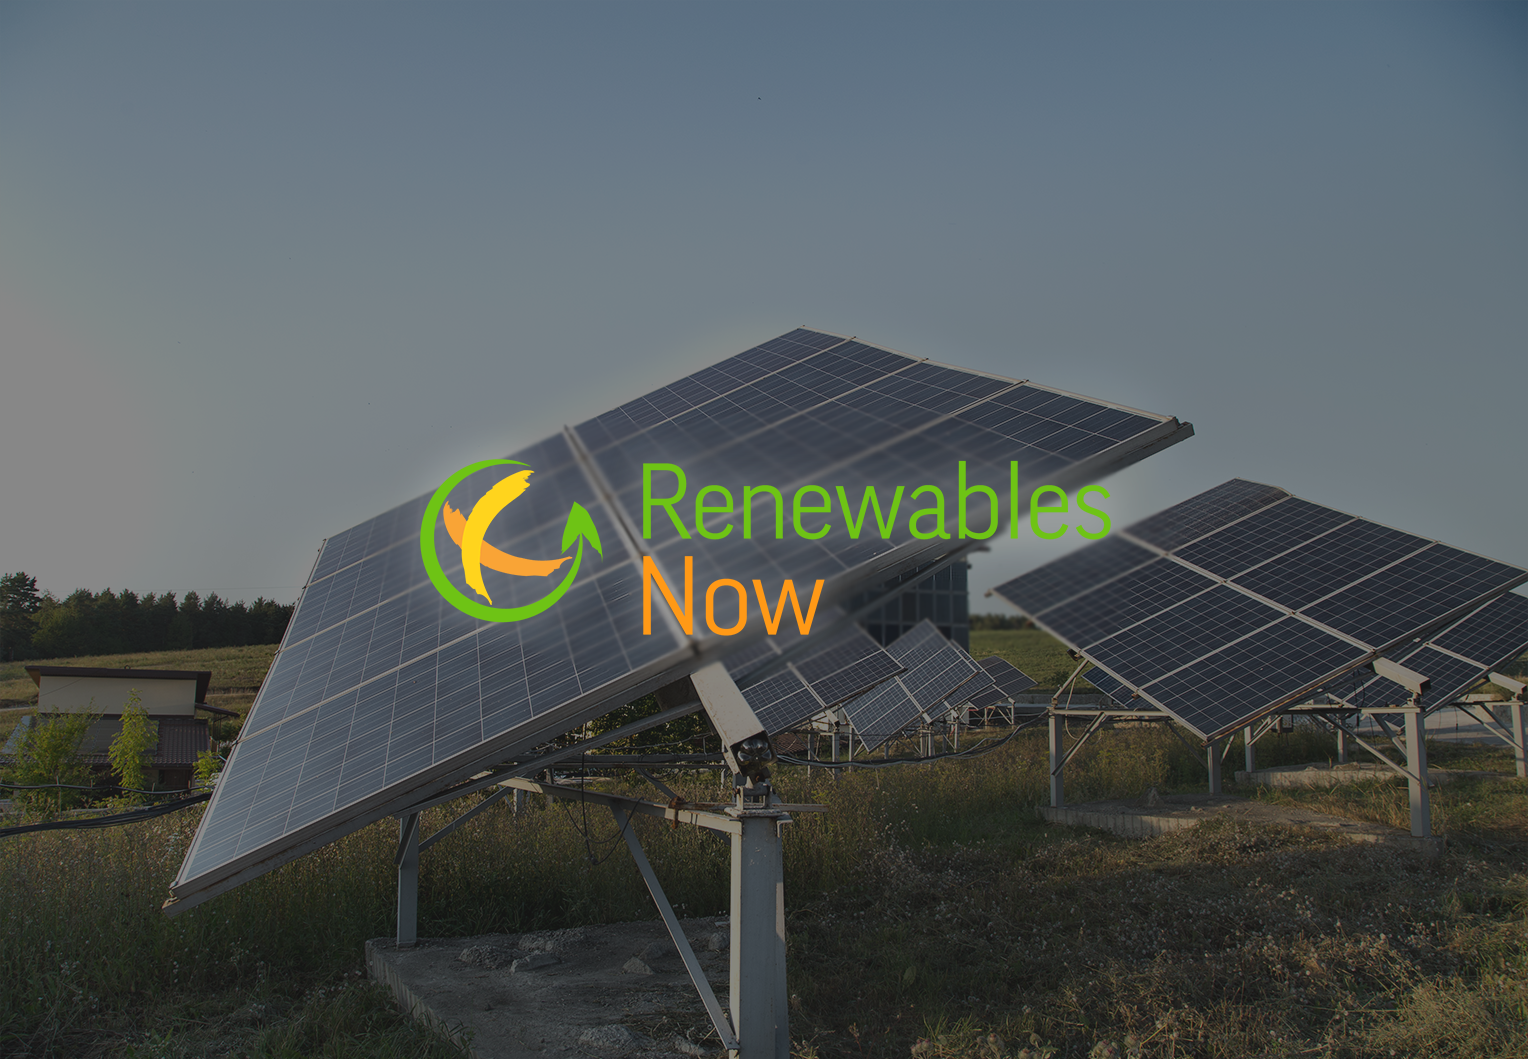 Renewablesnow